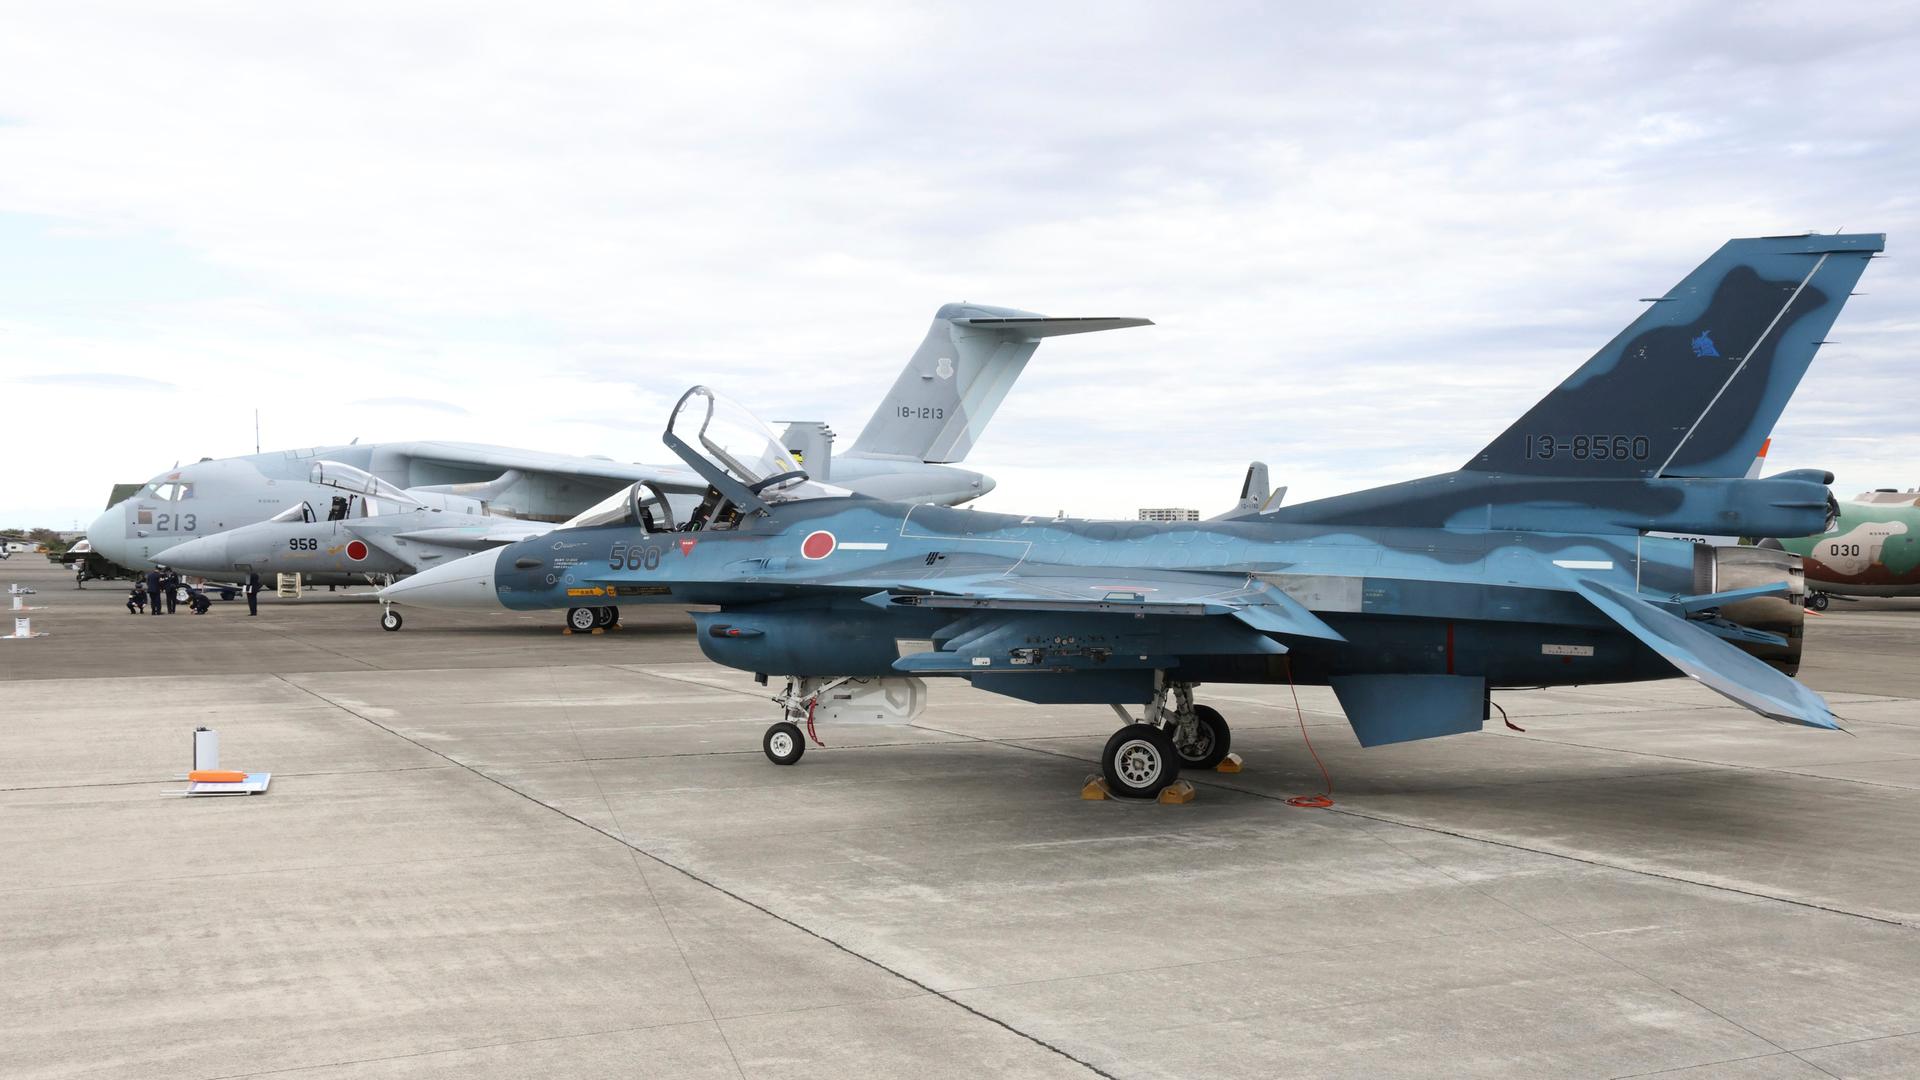 Japan - Regierung genehmigt Export von Kampfflugzeugen